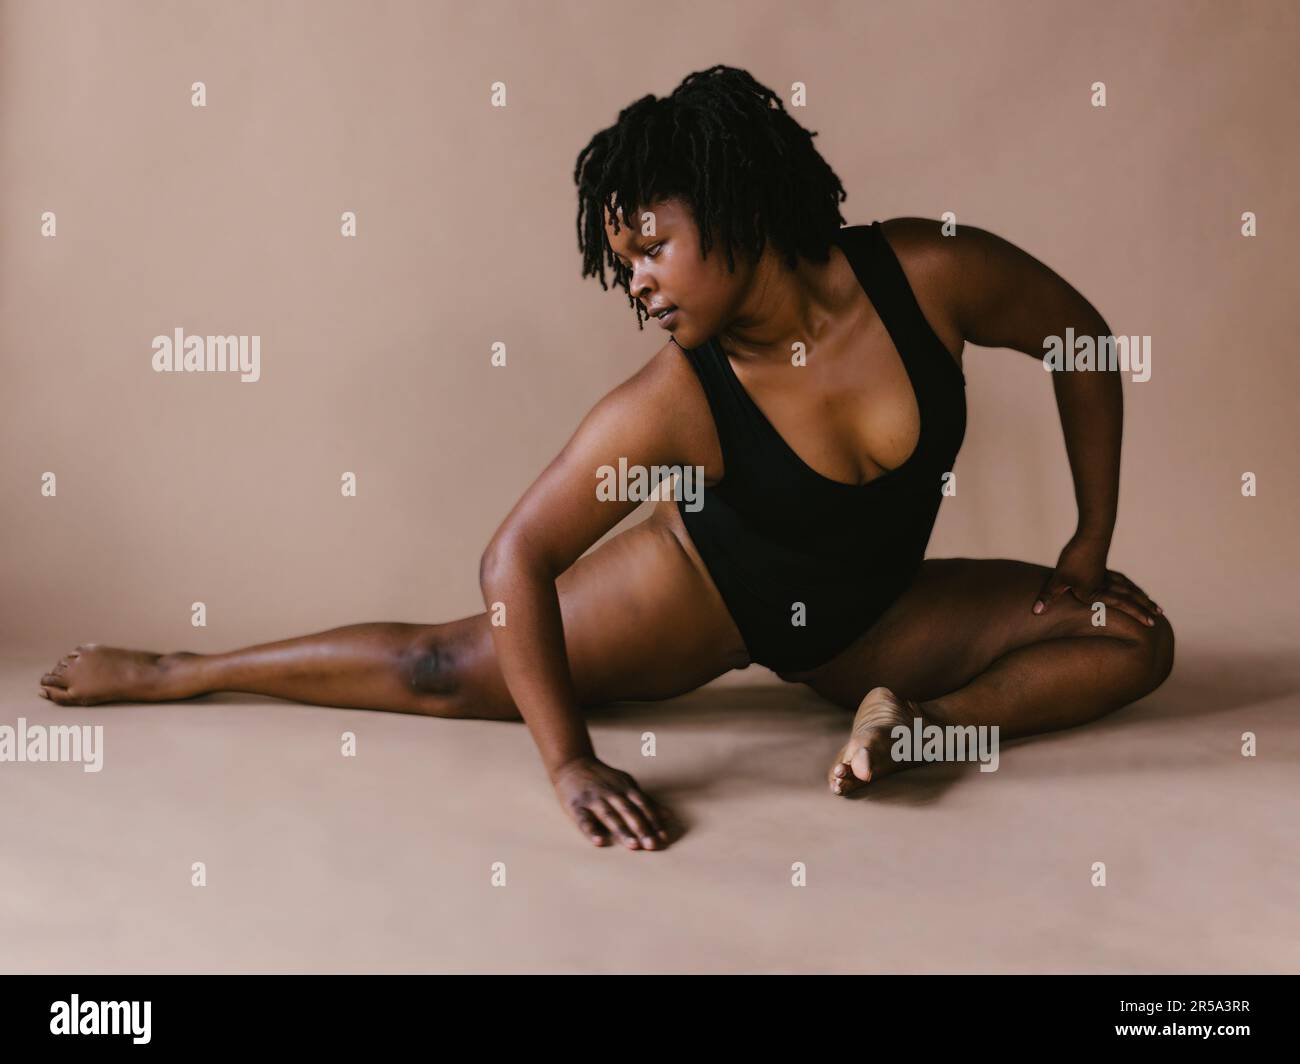 Donna danzatrice nera in posizione di danza a metà spezzata in studio Foto Stock